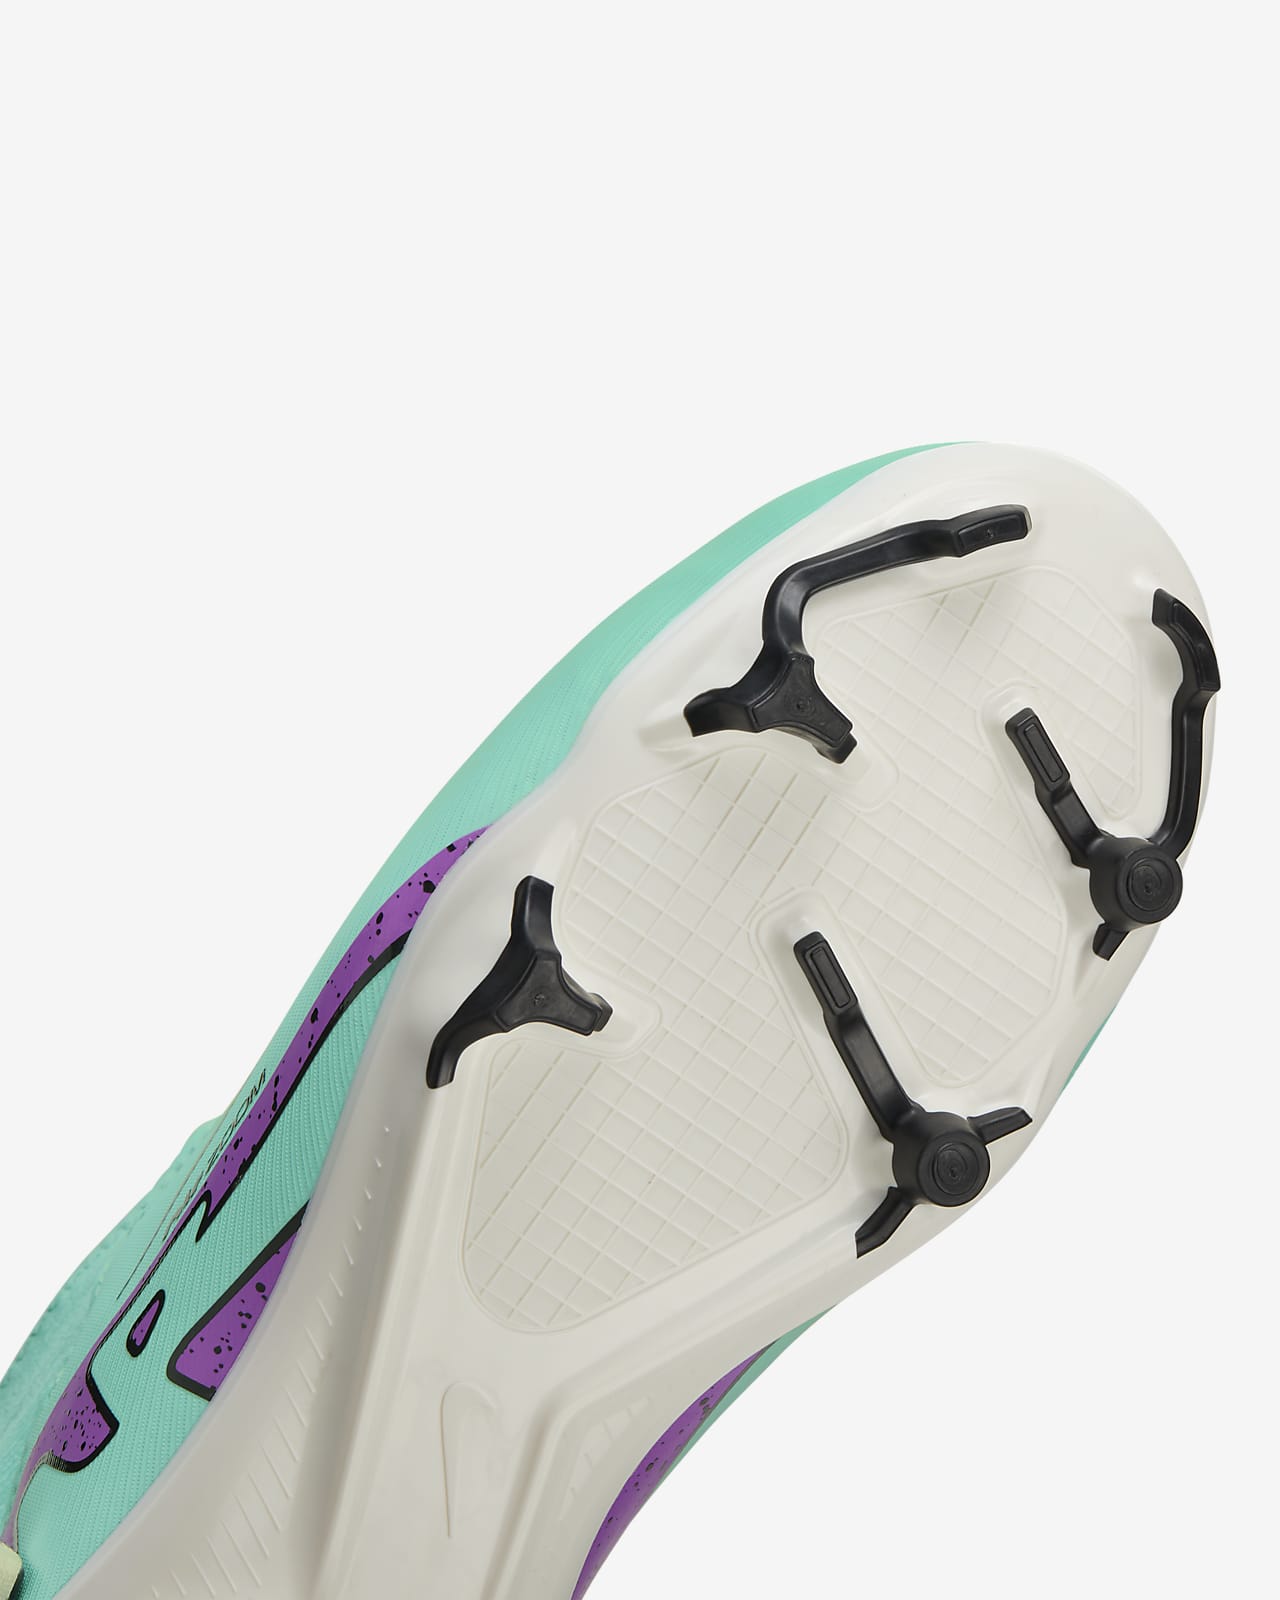 Chaussure de foot montante à crampons multi-surfaces Nike Jr